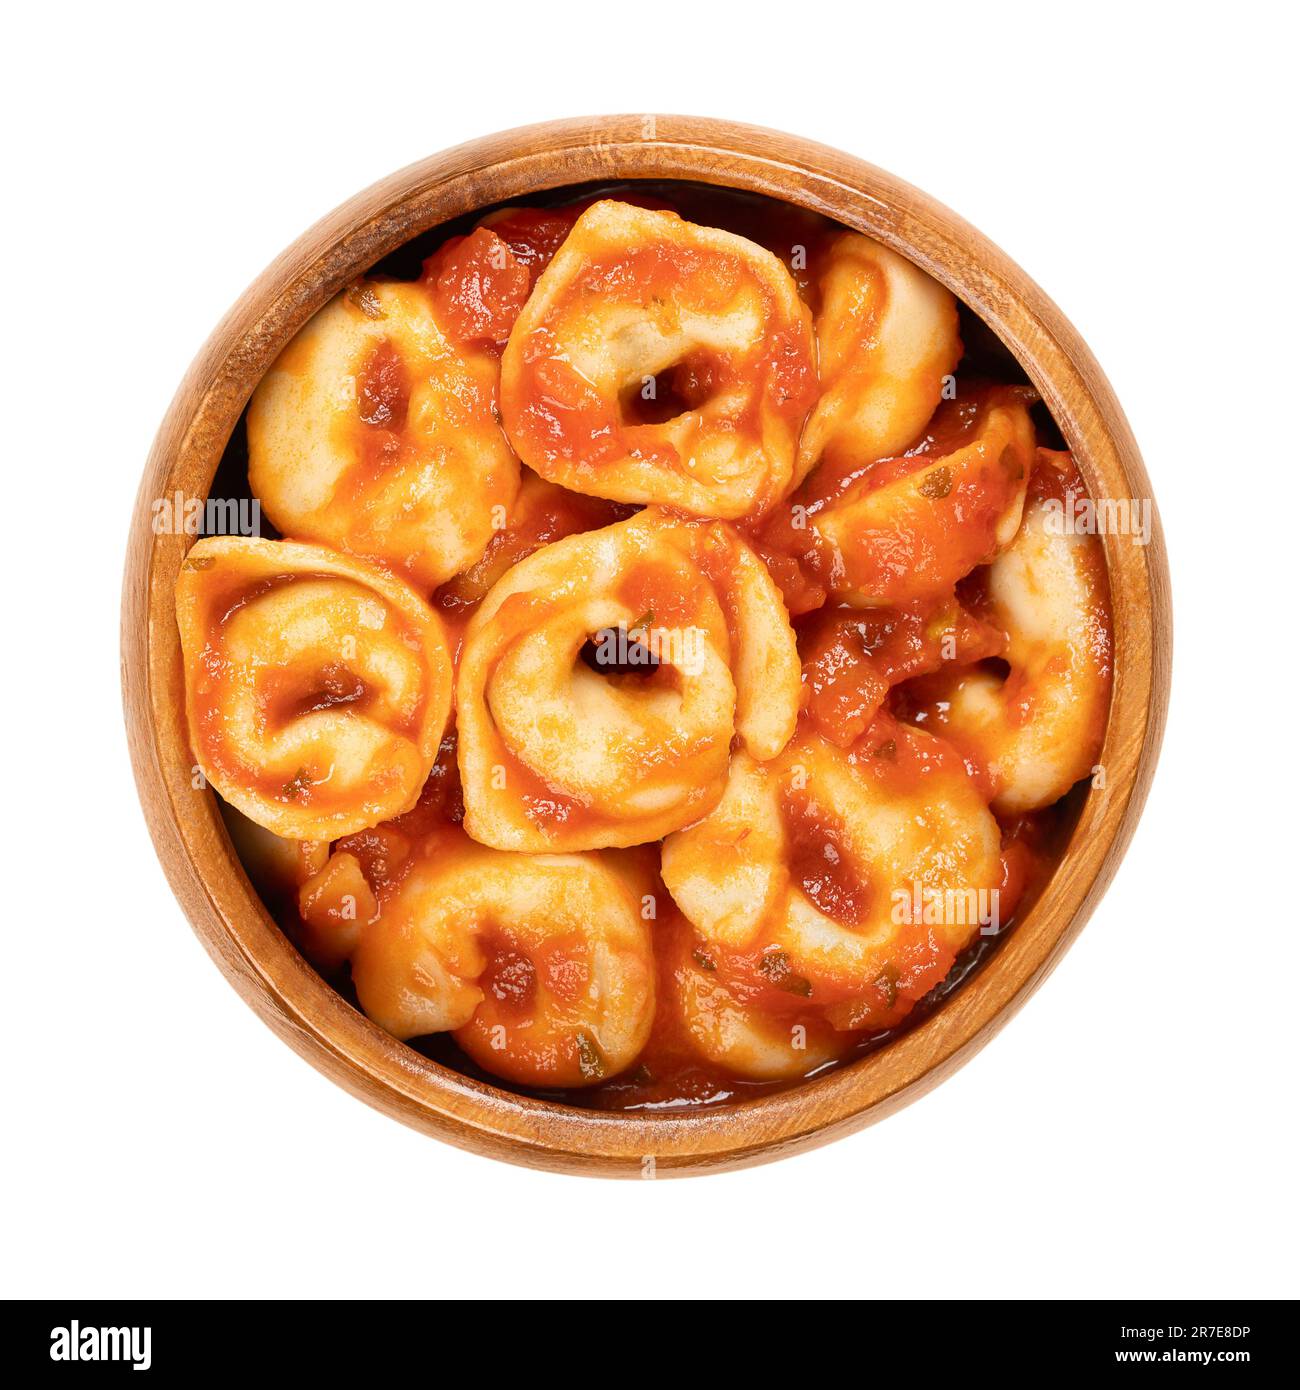 Gekochte Tortellini in Tomatensoße, in einer Holzschüssel. Industriell gefertigte gefüllte Knödel. Italienische Pasta aus Hartweizengrieß. Stockfoto